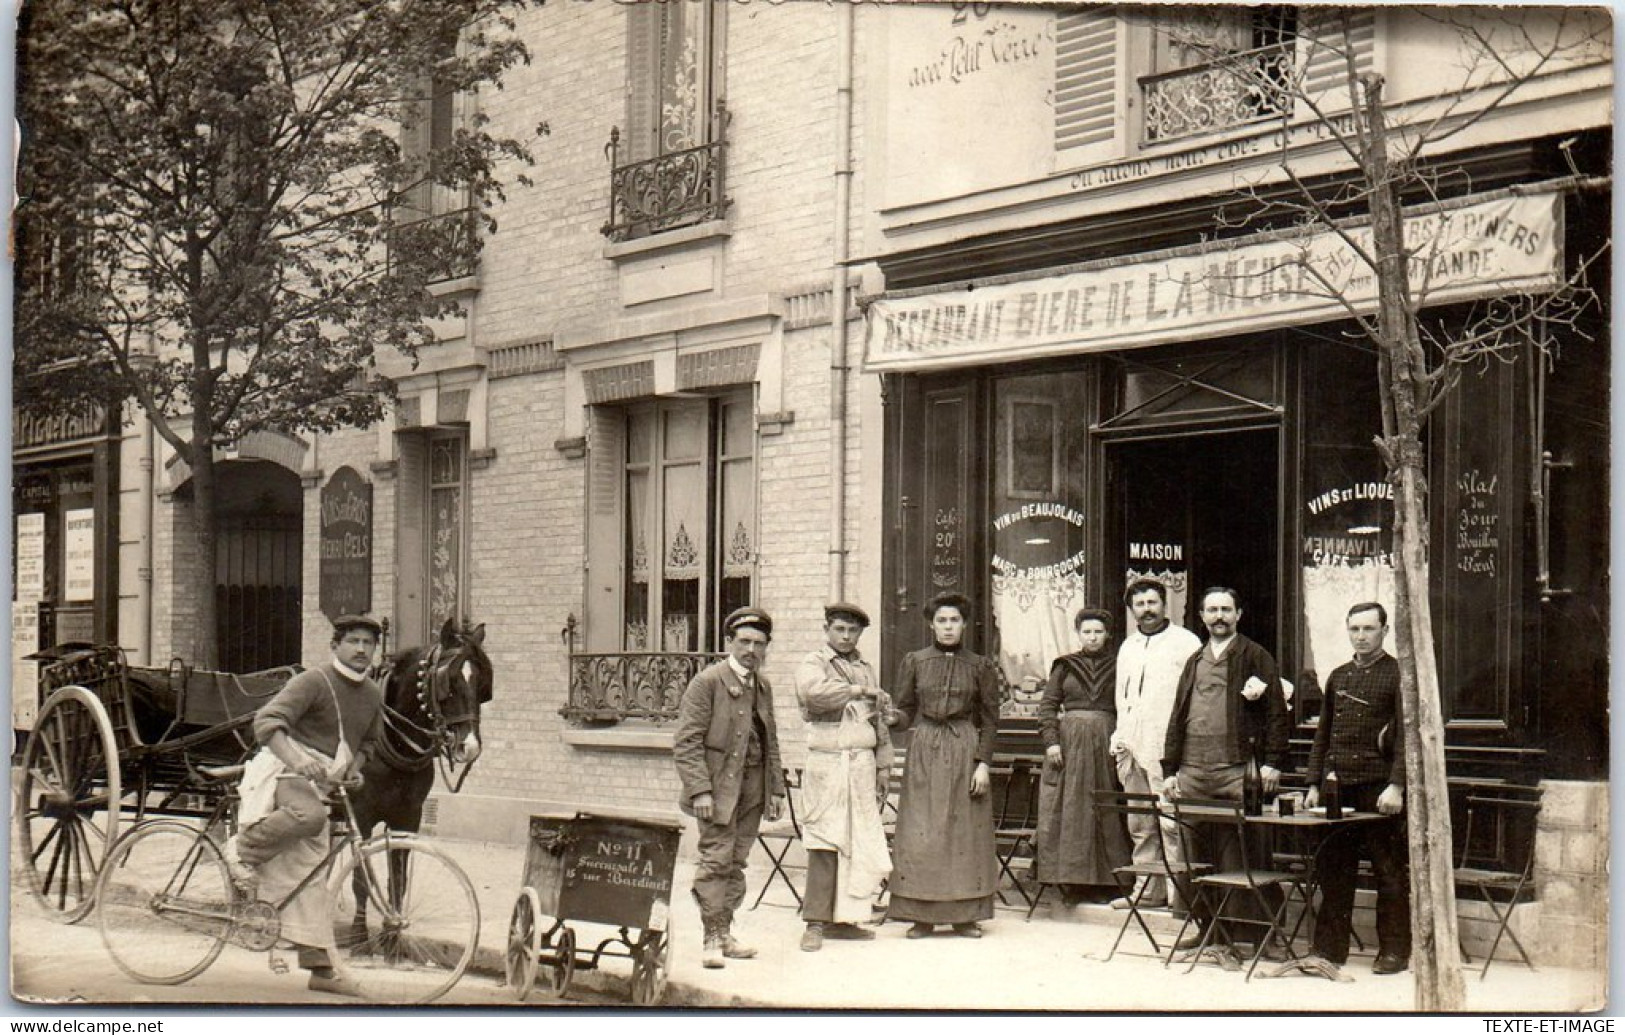 94 SAINT MAUR DES FOSSES - CARTE PHOTO - Cafe 15 Rue Republique  - Saint Maur Des Fosses